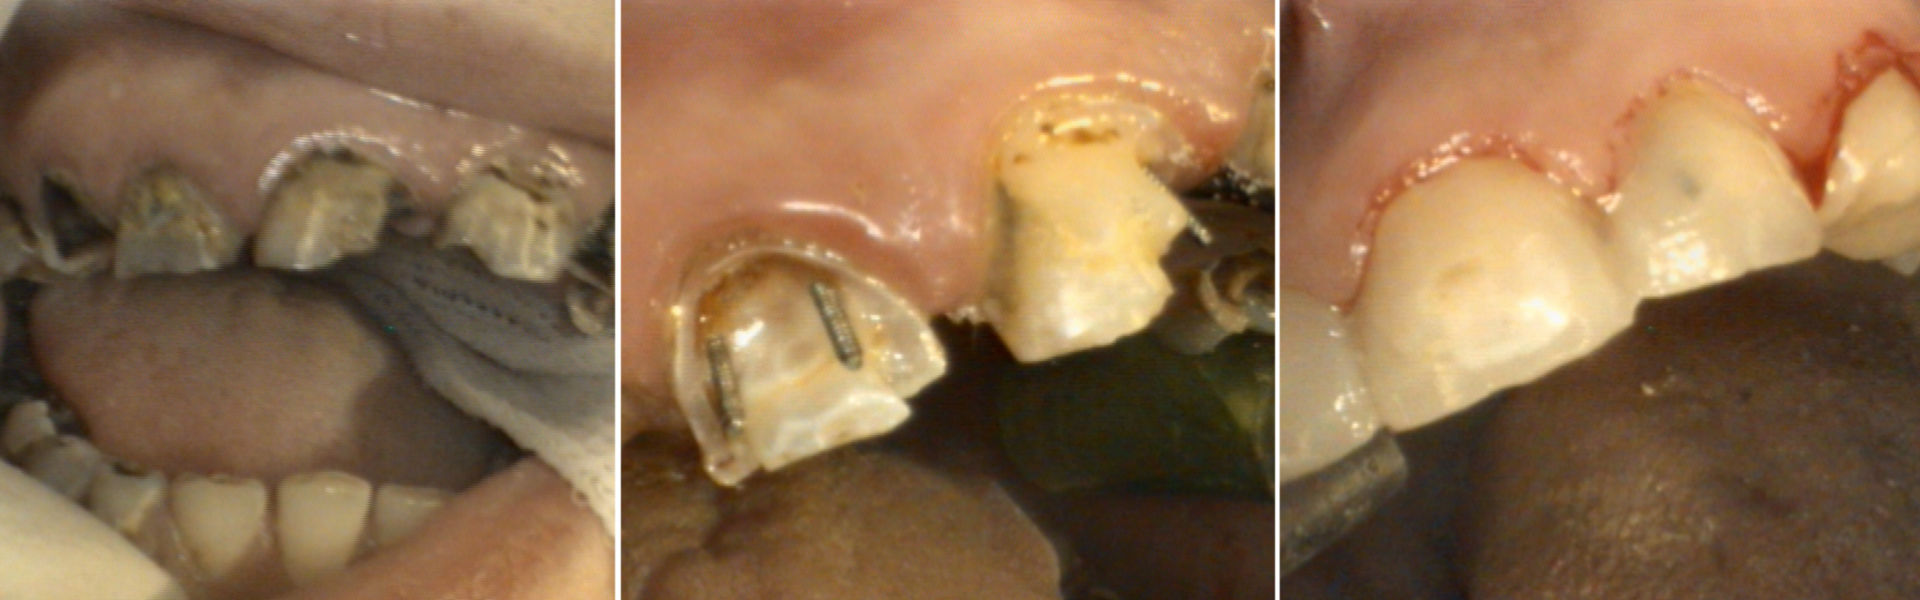 Zahnsanierung I